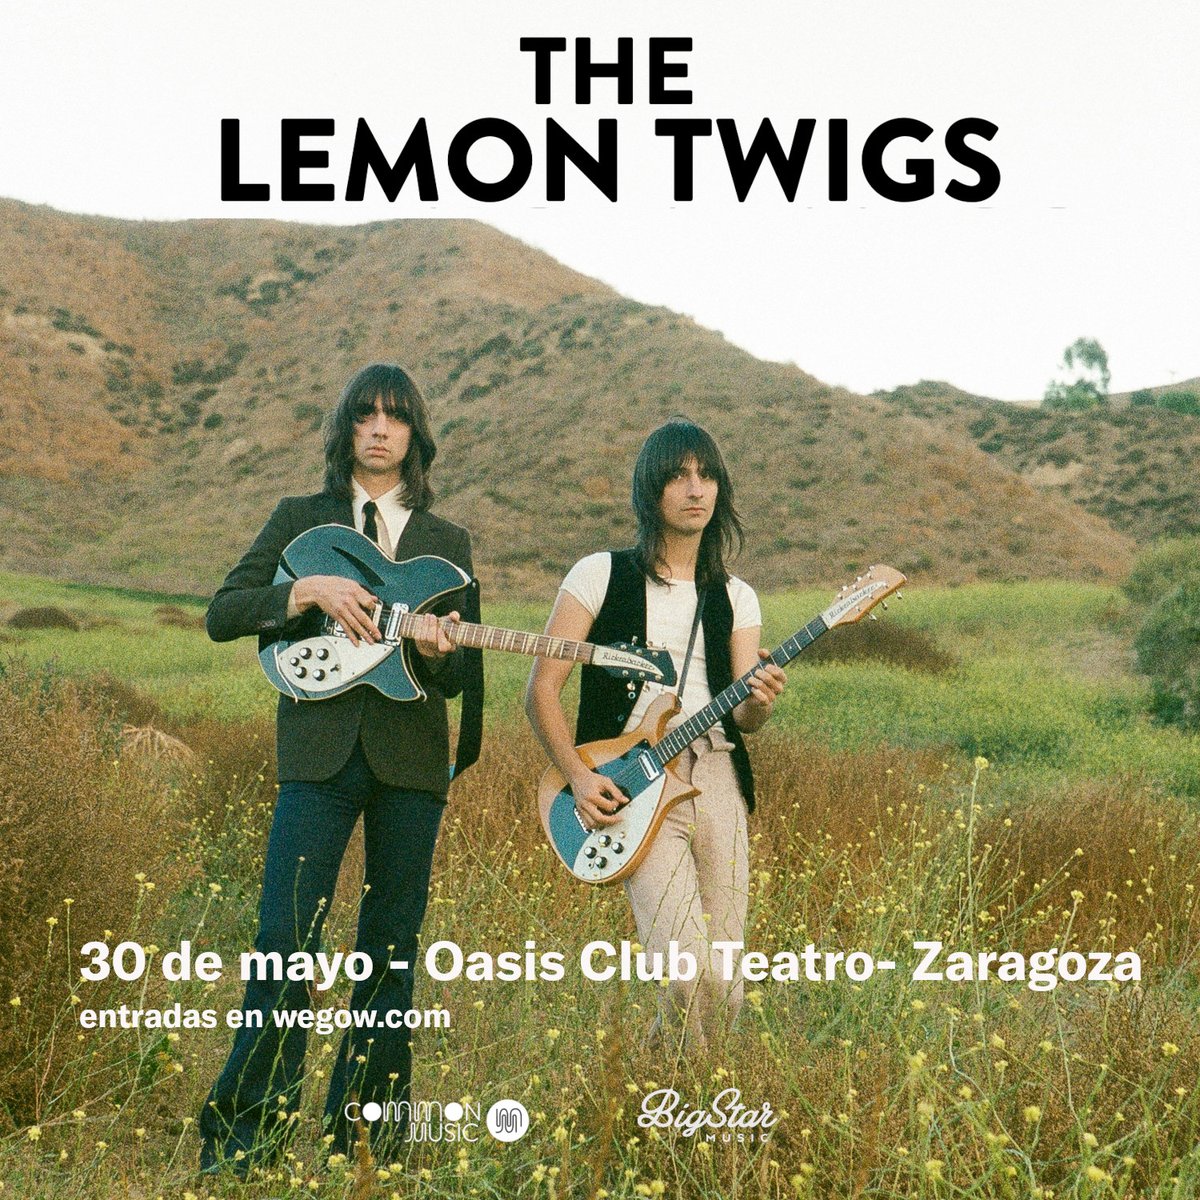 Siempre es un gran día cuando toca anunciar que uno de nuestros grupos favoritos viene a la ciudad. The Lemon Twigs pasarán por Zaragoza para dar, seguro, uno de los conciertos del año. Desde mañana a las 10:00 entradas a la venta en Wegow.